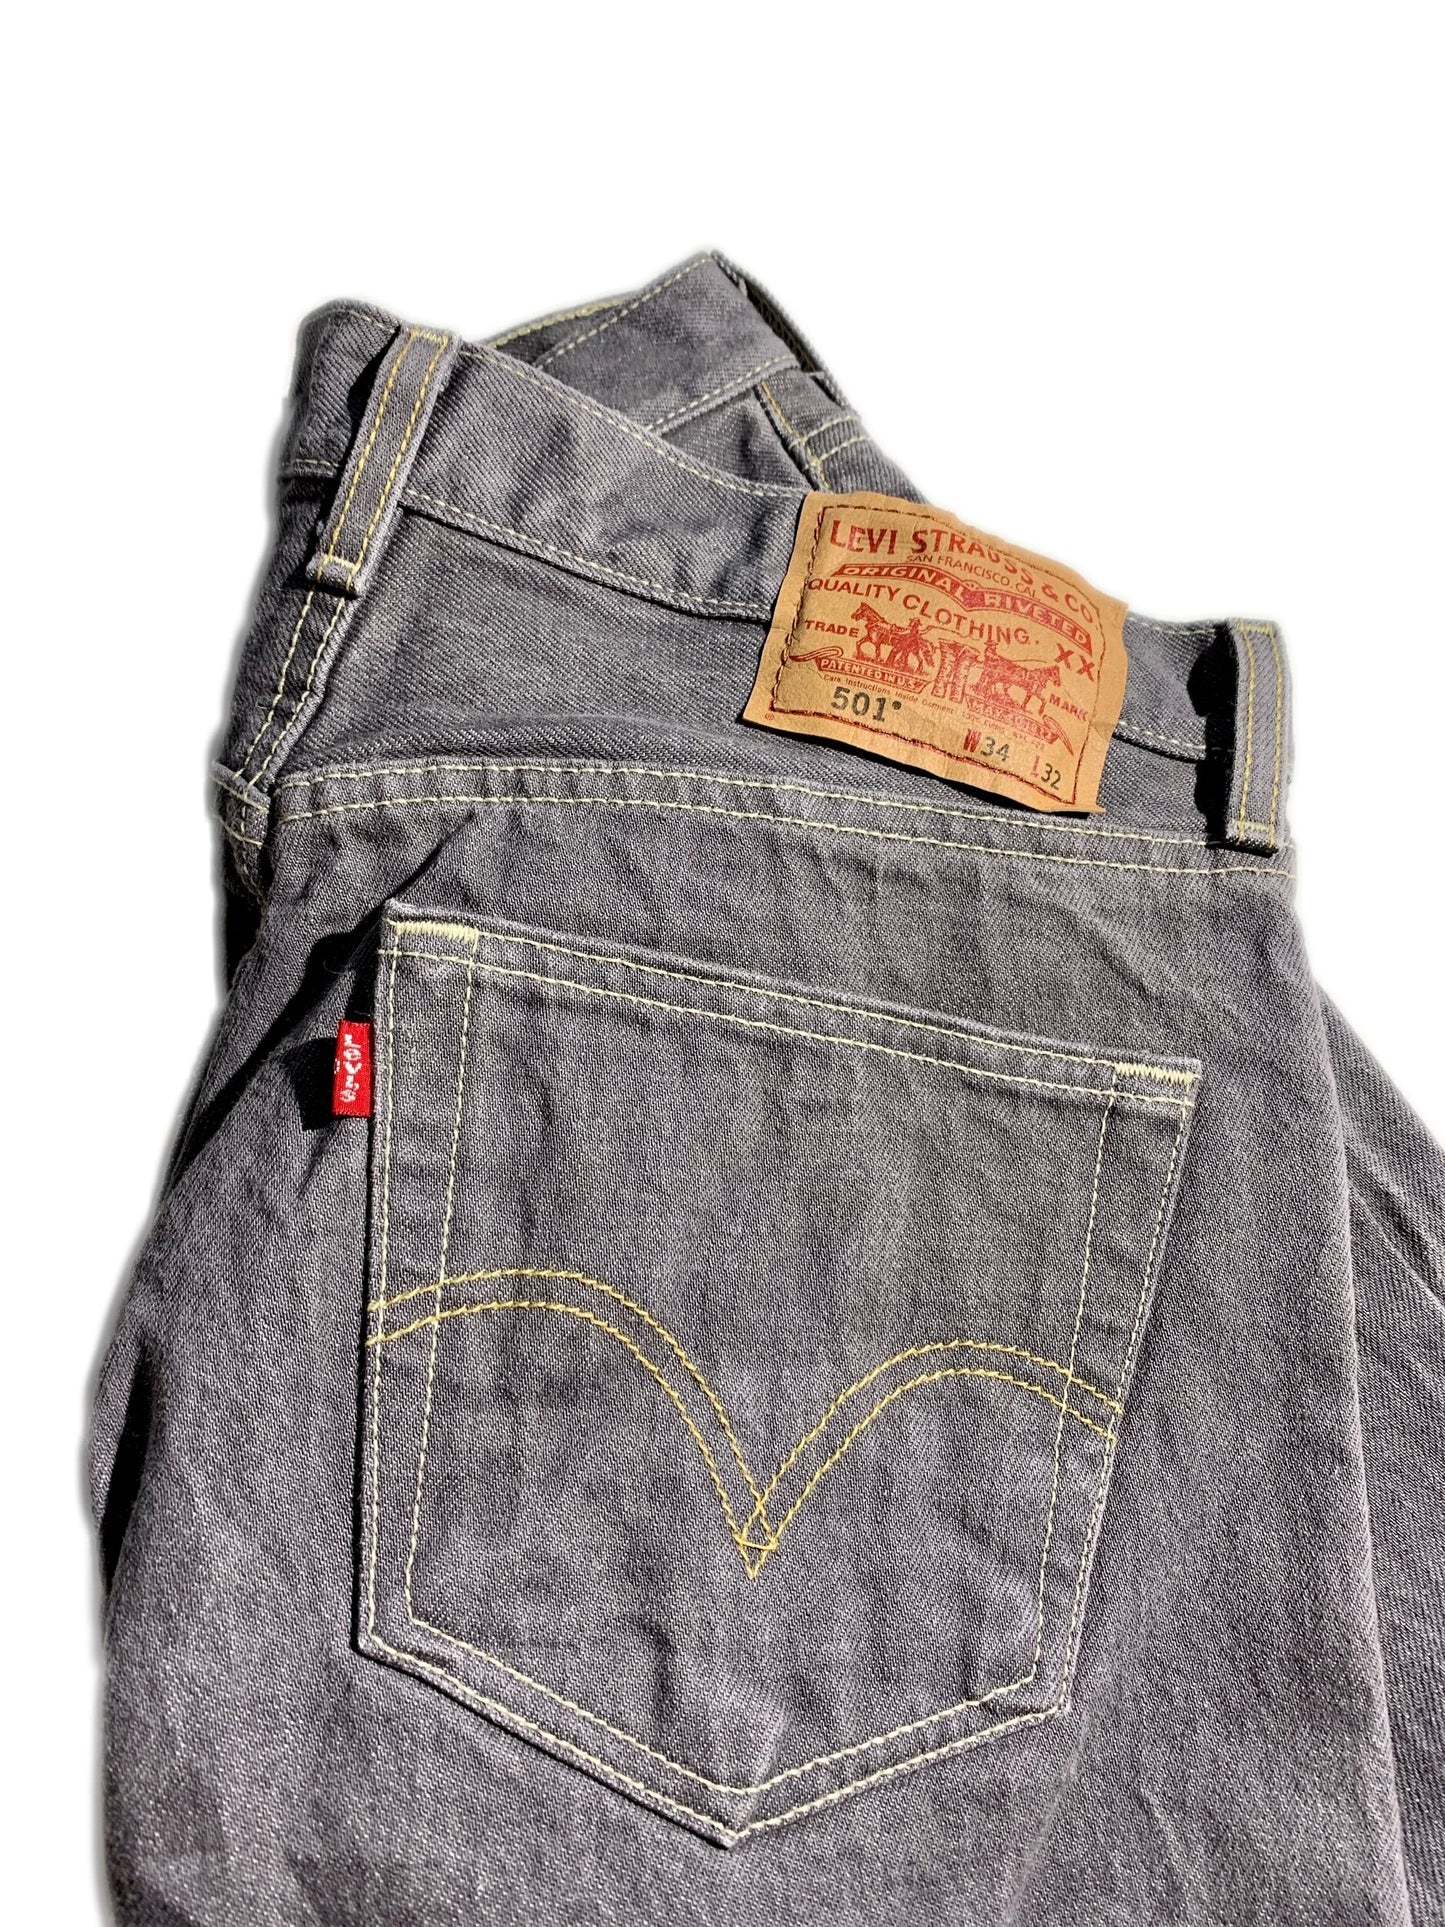 Vintage Levi’s 501 Jeans